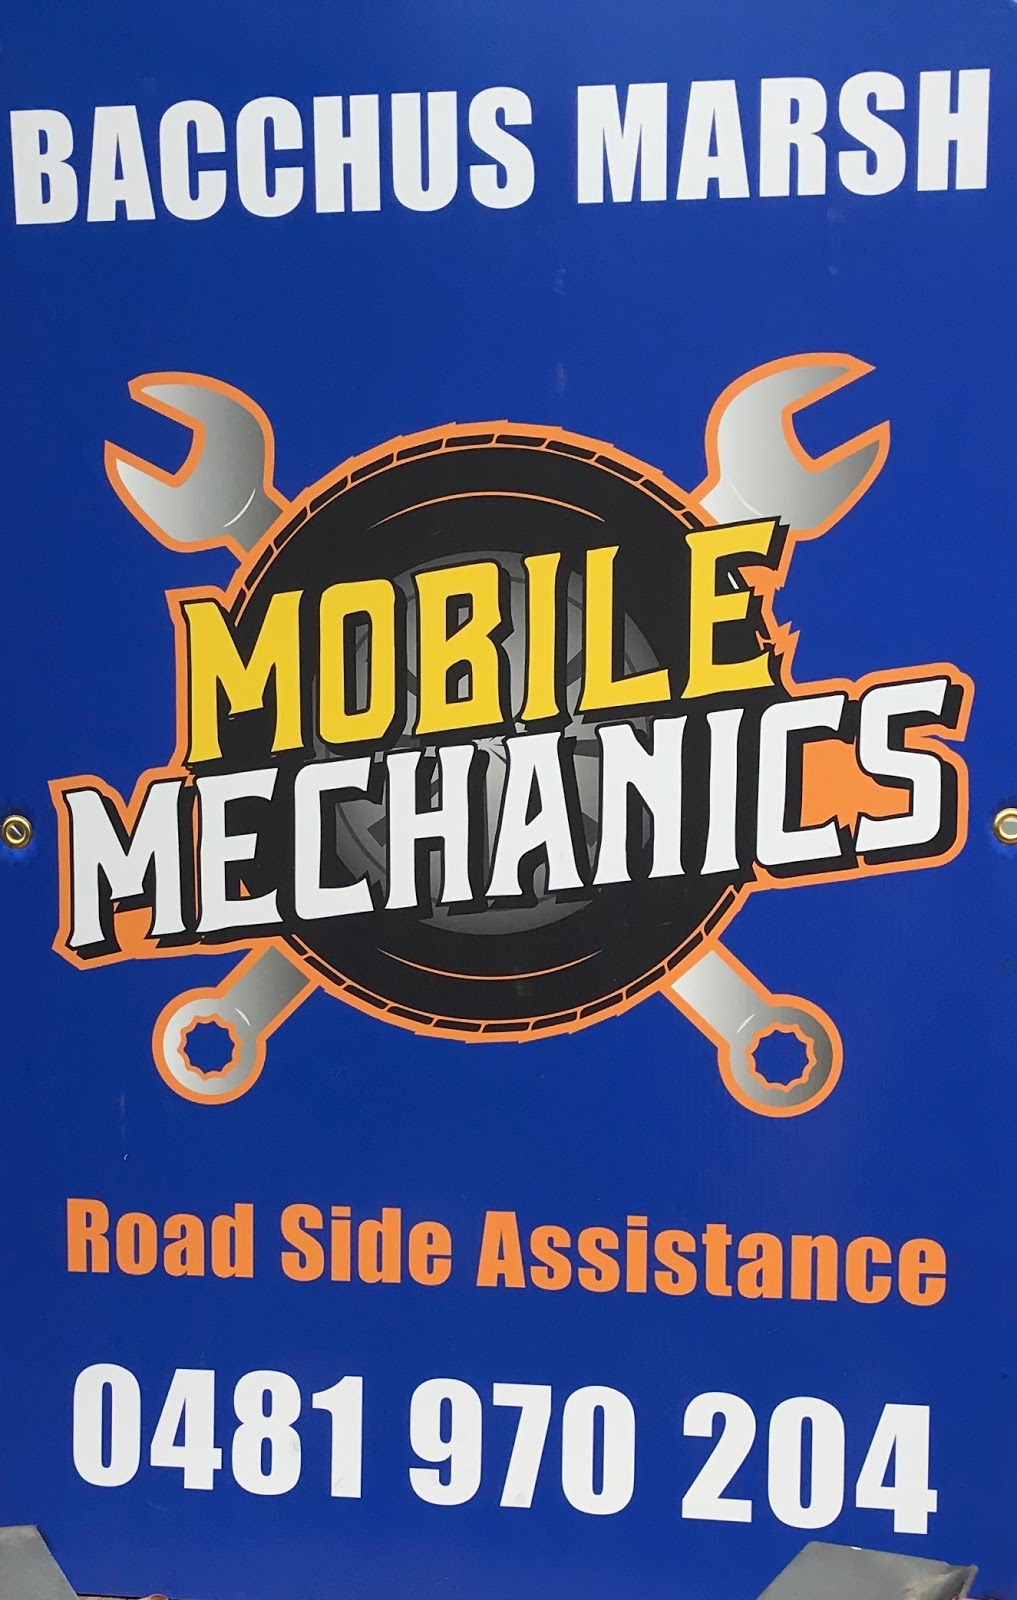 Bacchus Marsh Mobile Mechanics | car repair | 30 Silverdale Dr, Darley VIC 3340, Australia | 0481970204 OR +61 481 970 204